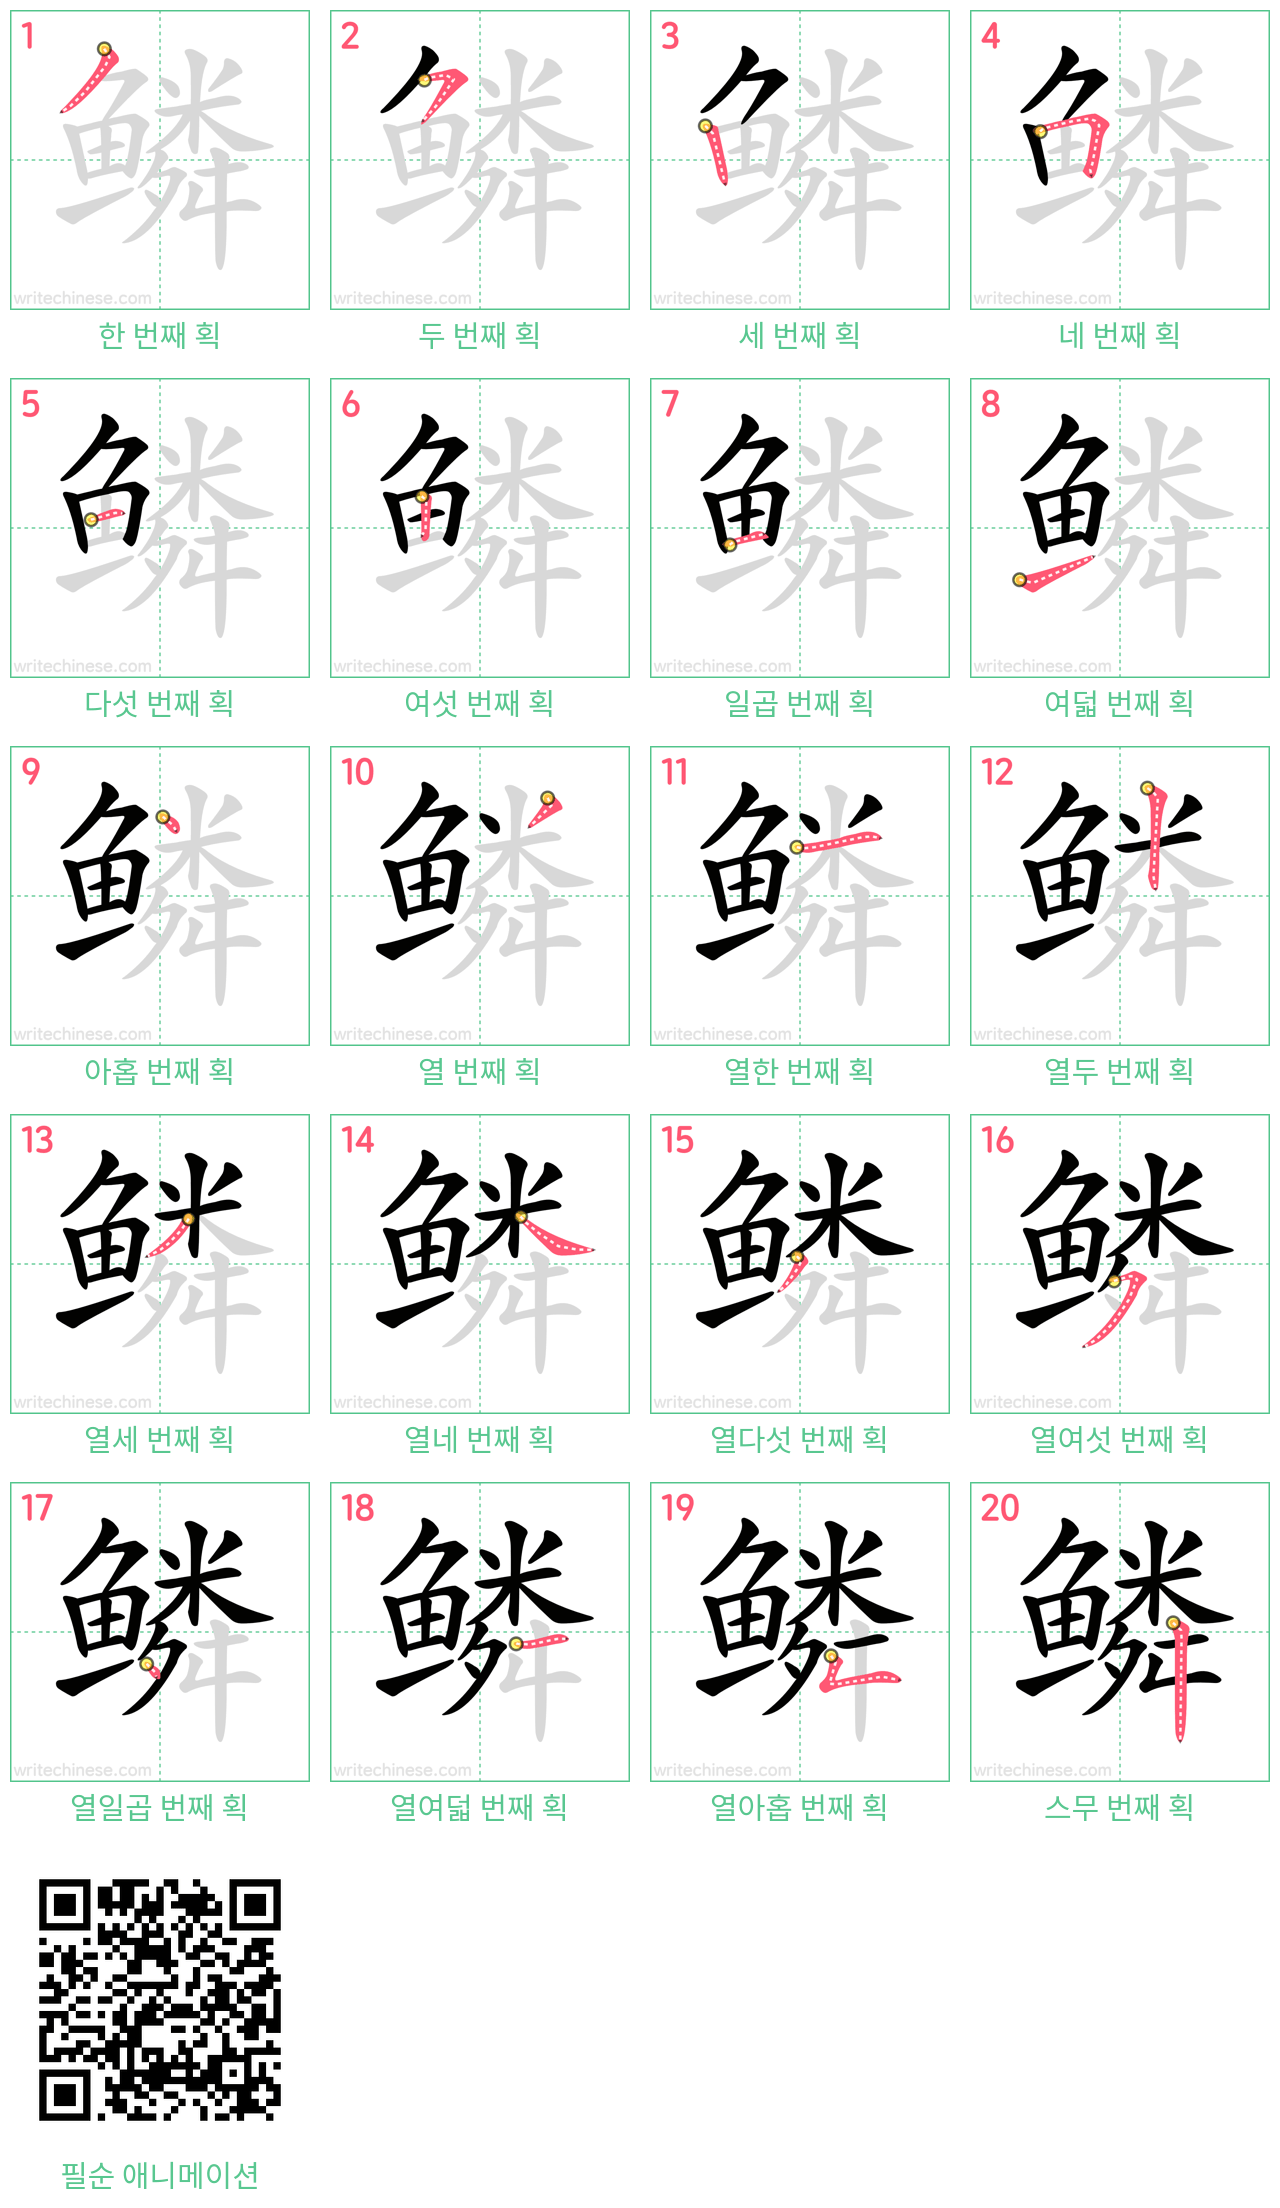 鳞 step-by-step stroke order diagrams